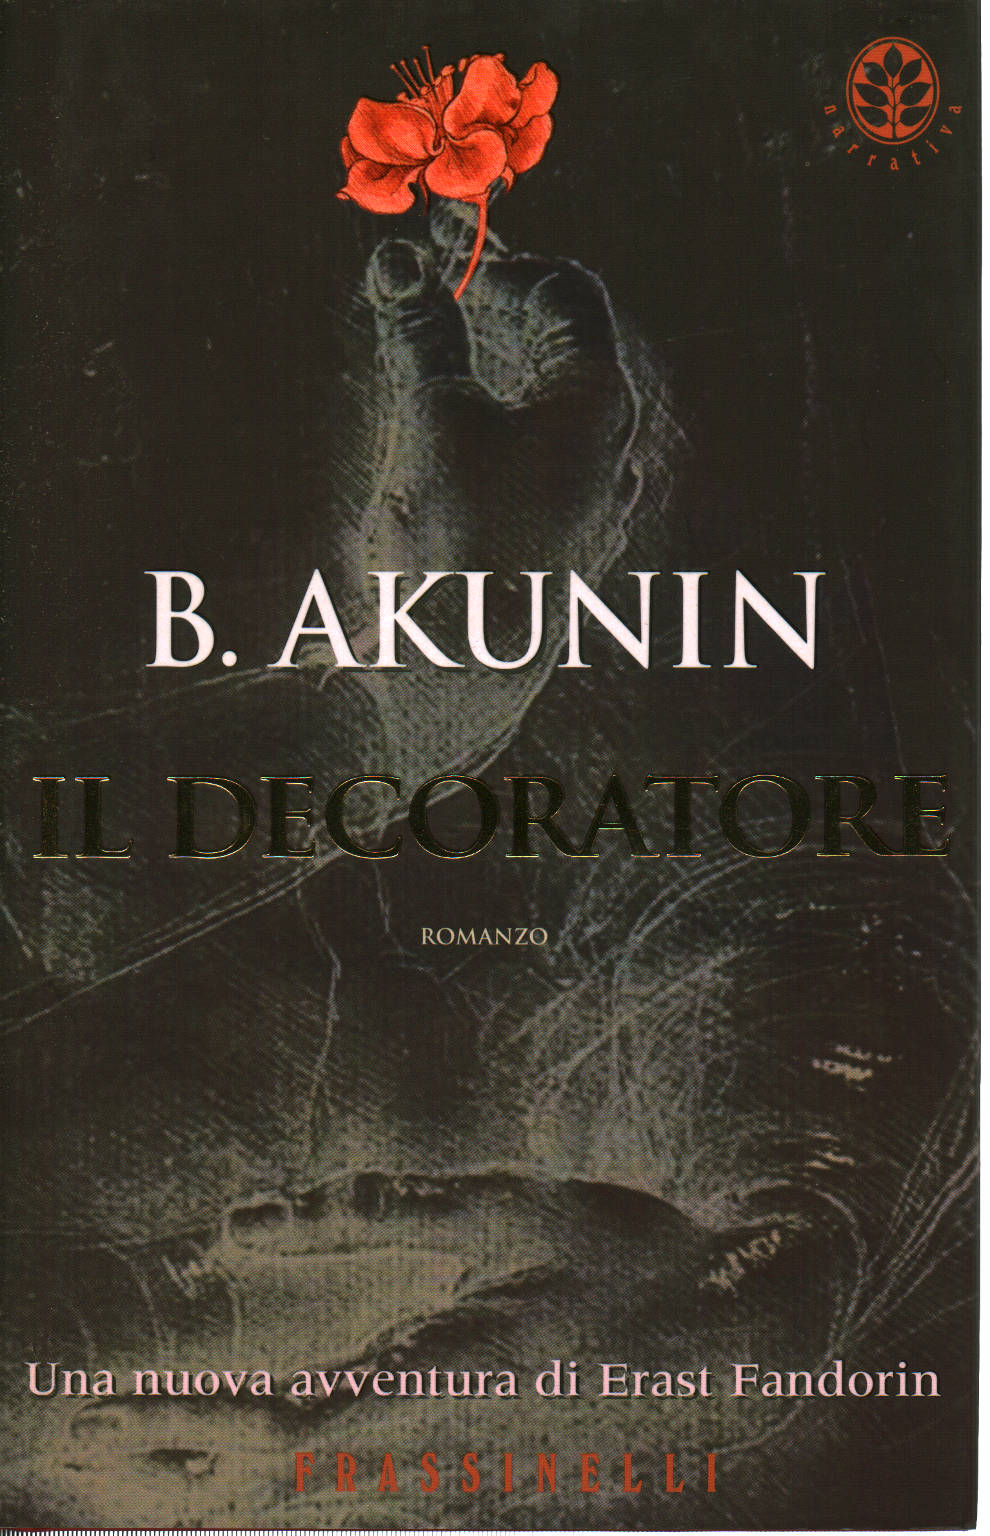 Dekorateur, B. Akunin